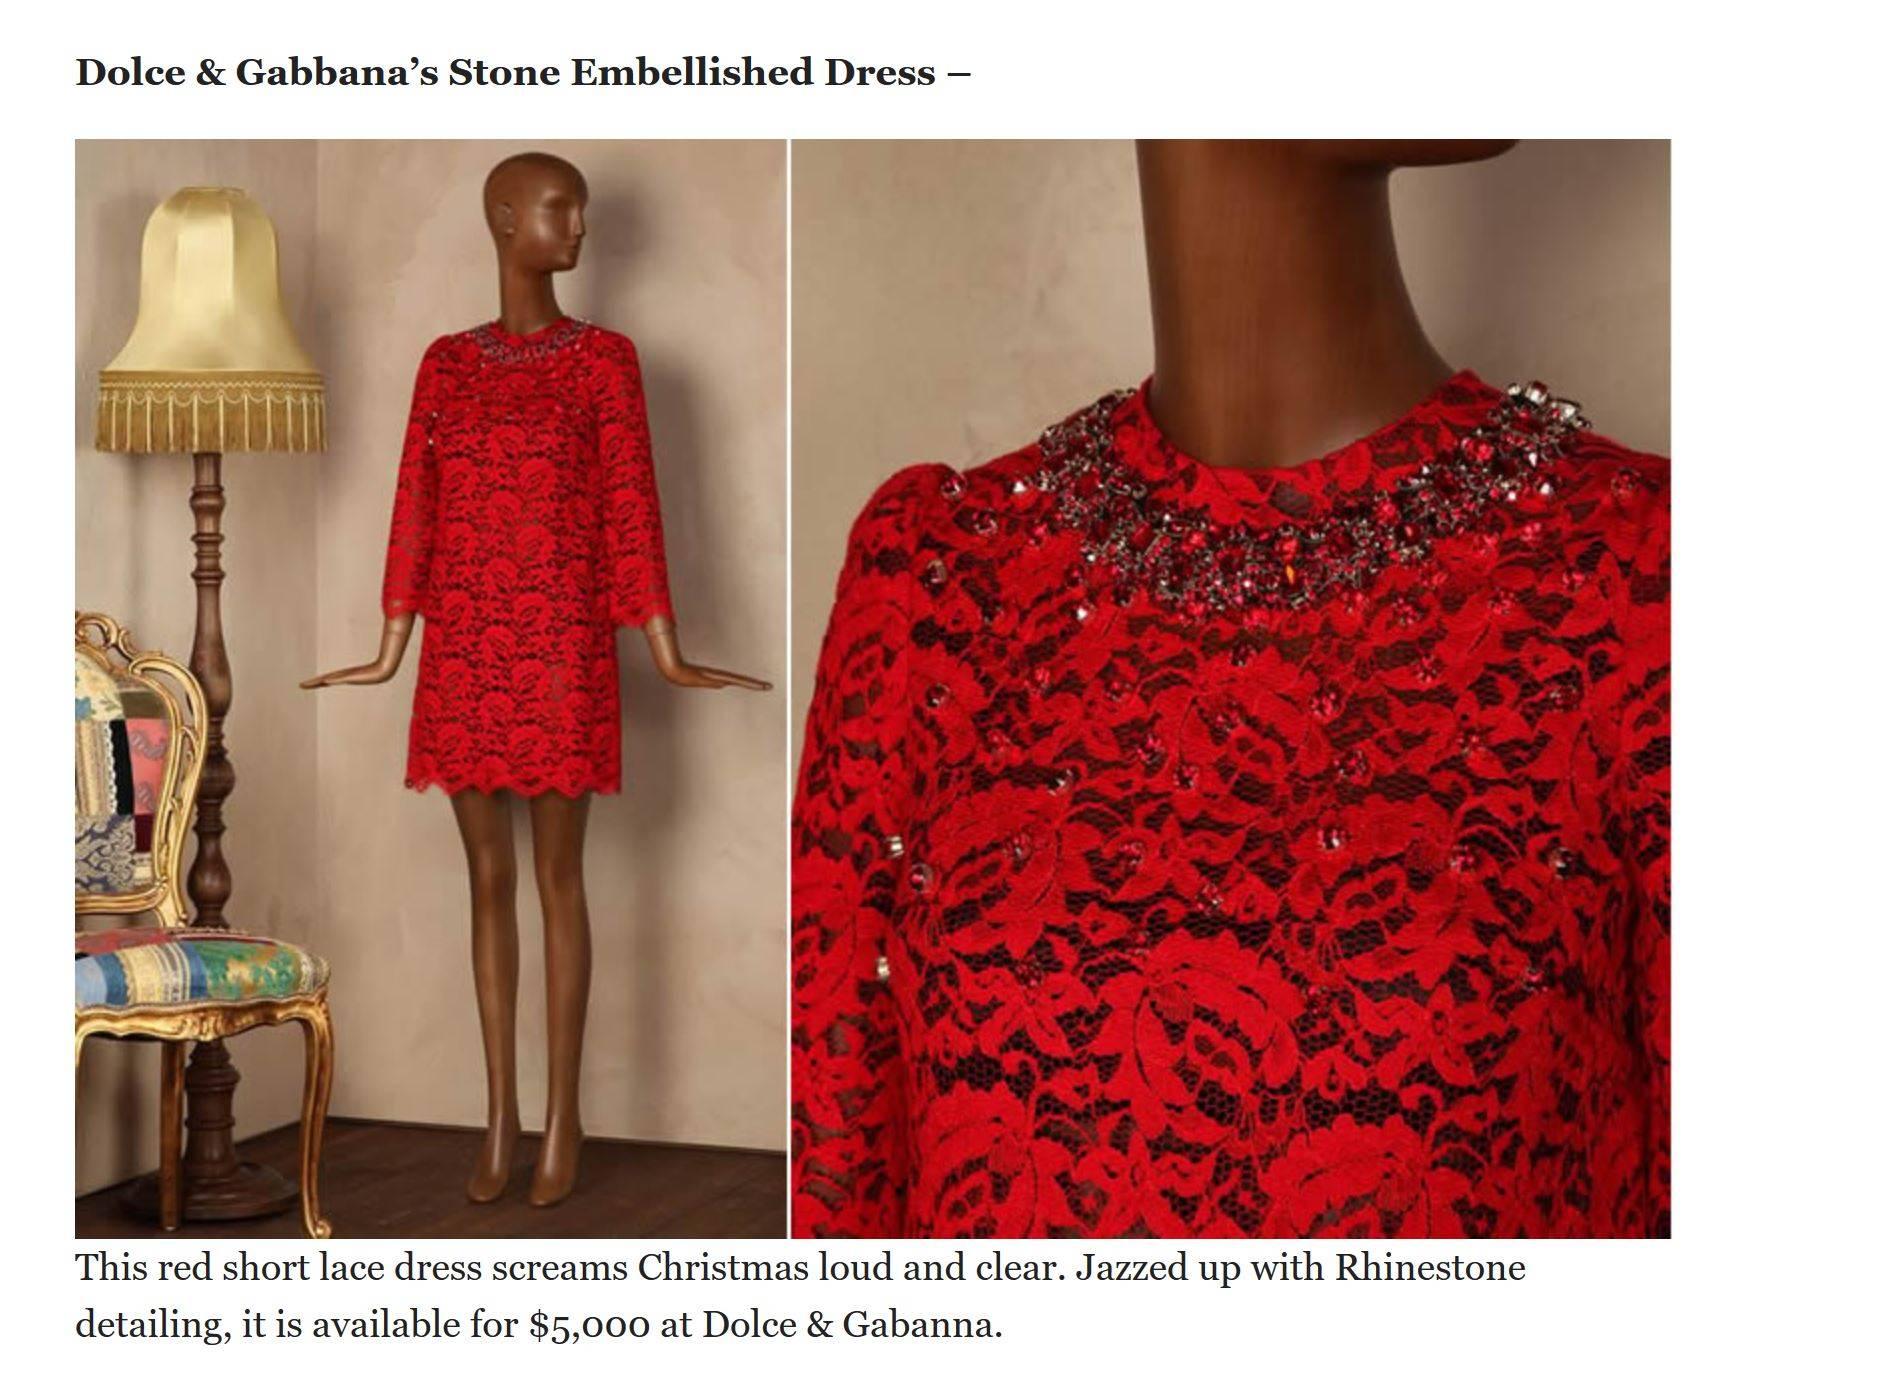 Dolce & Gabbana - Robe en dentelle et soie rouge ornée de cristaux, taille 38, état neuf en vente 6